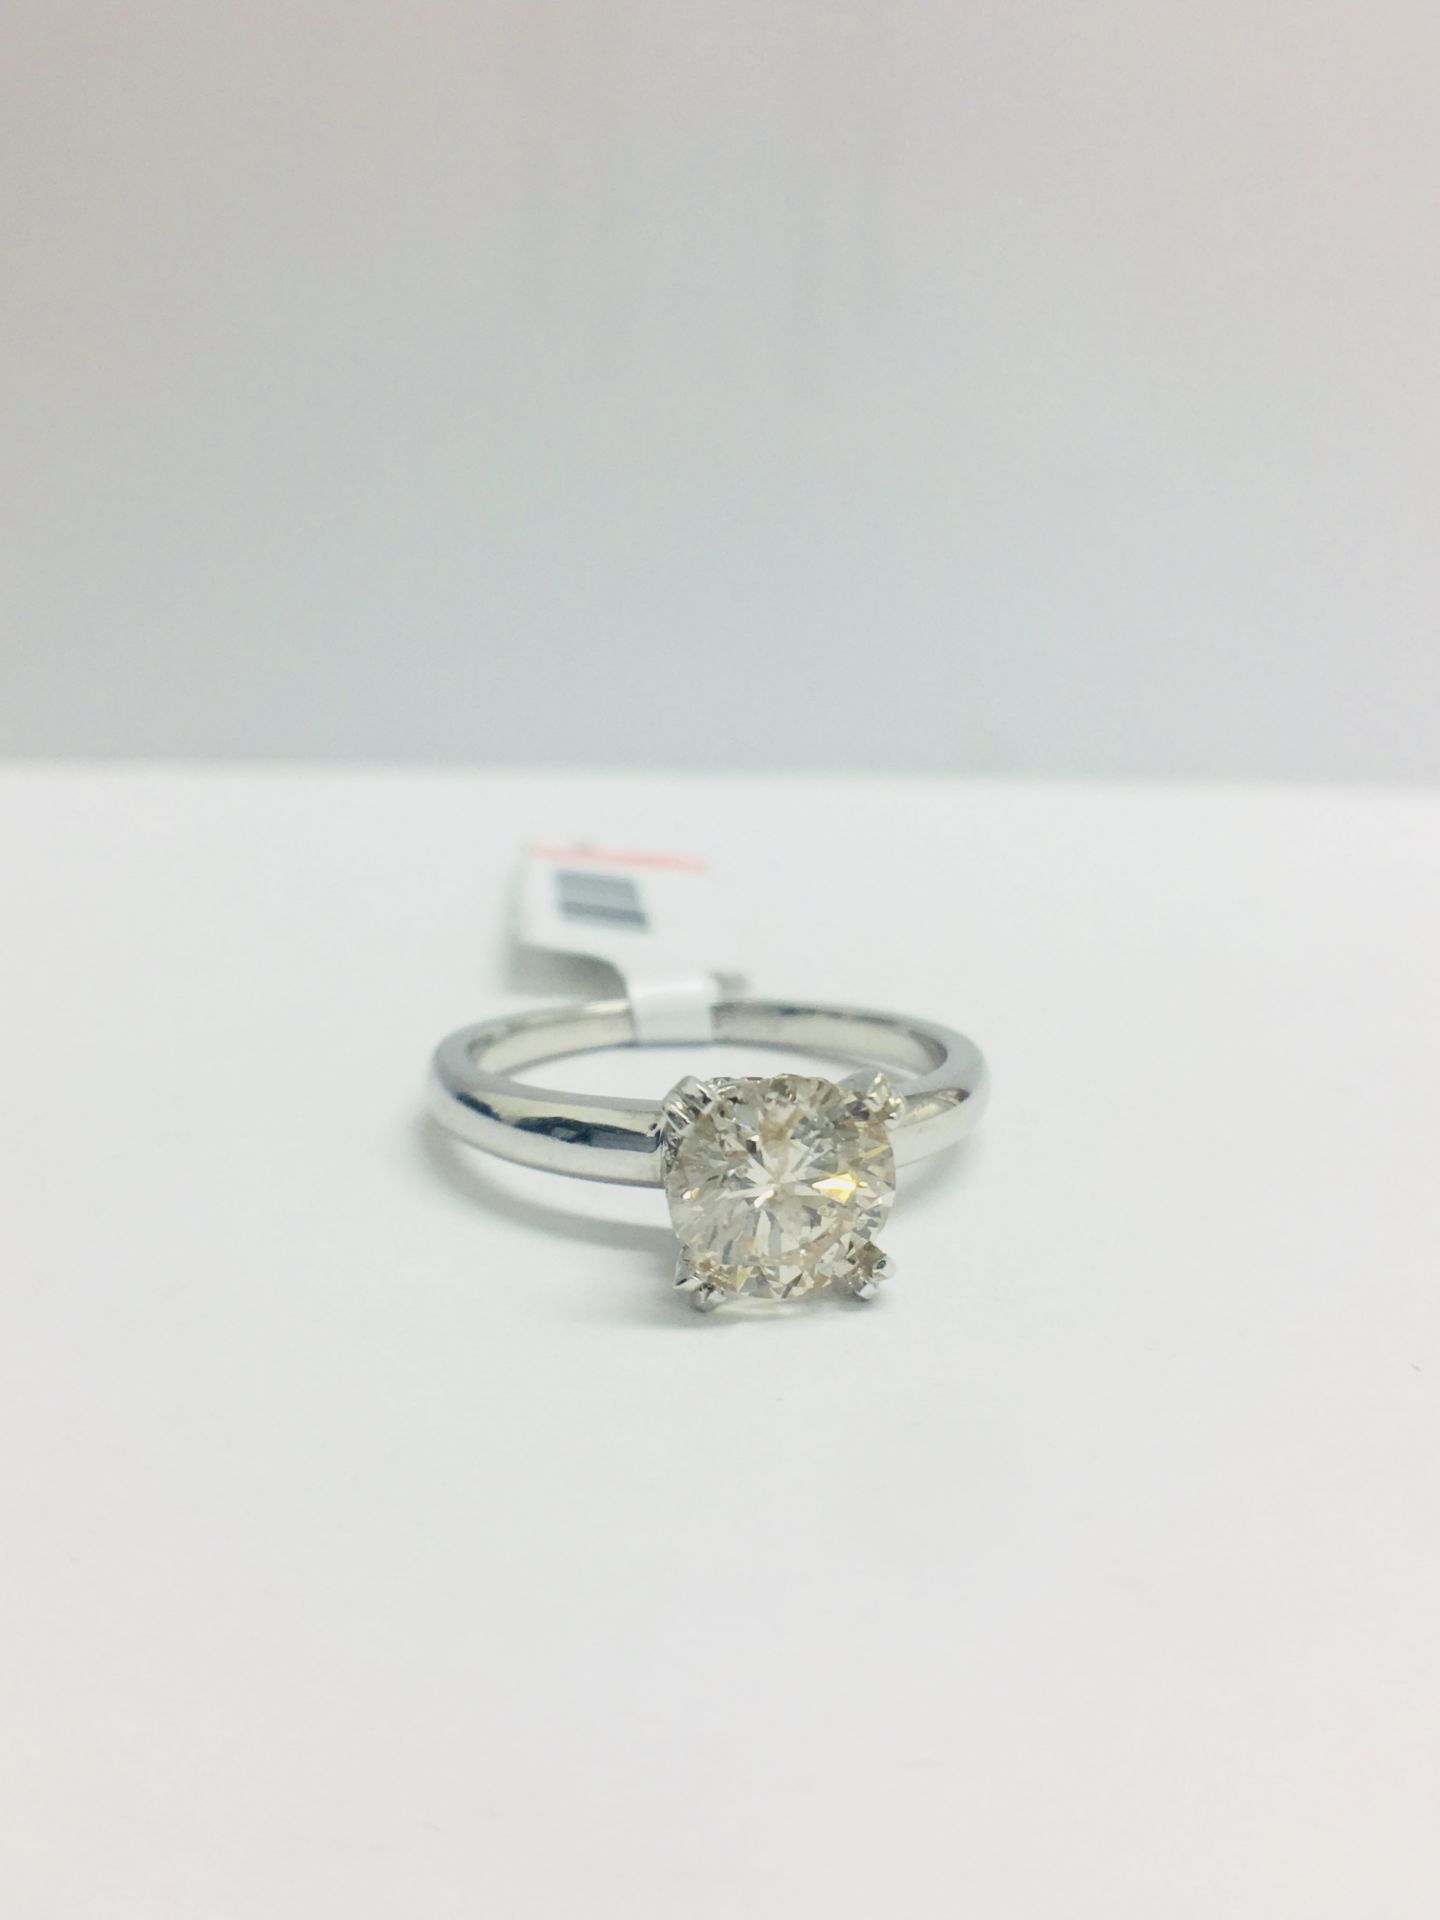 1ct Diamond Solitaire ring set in Platinum diamnd setting - Image 12 of 13